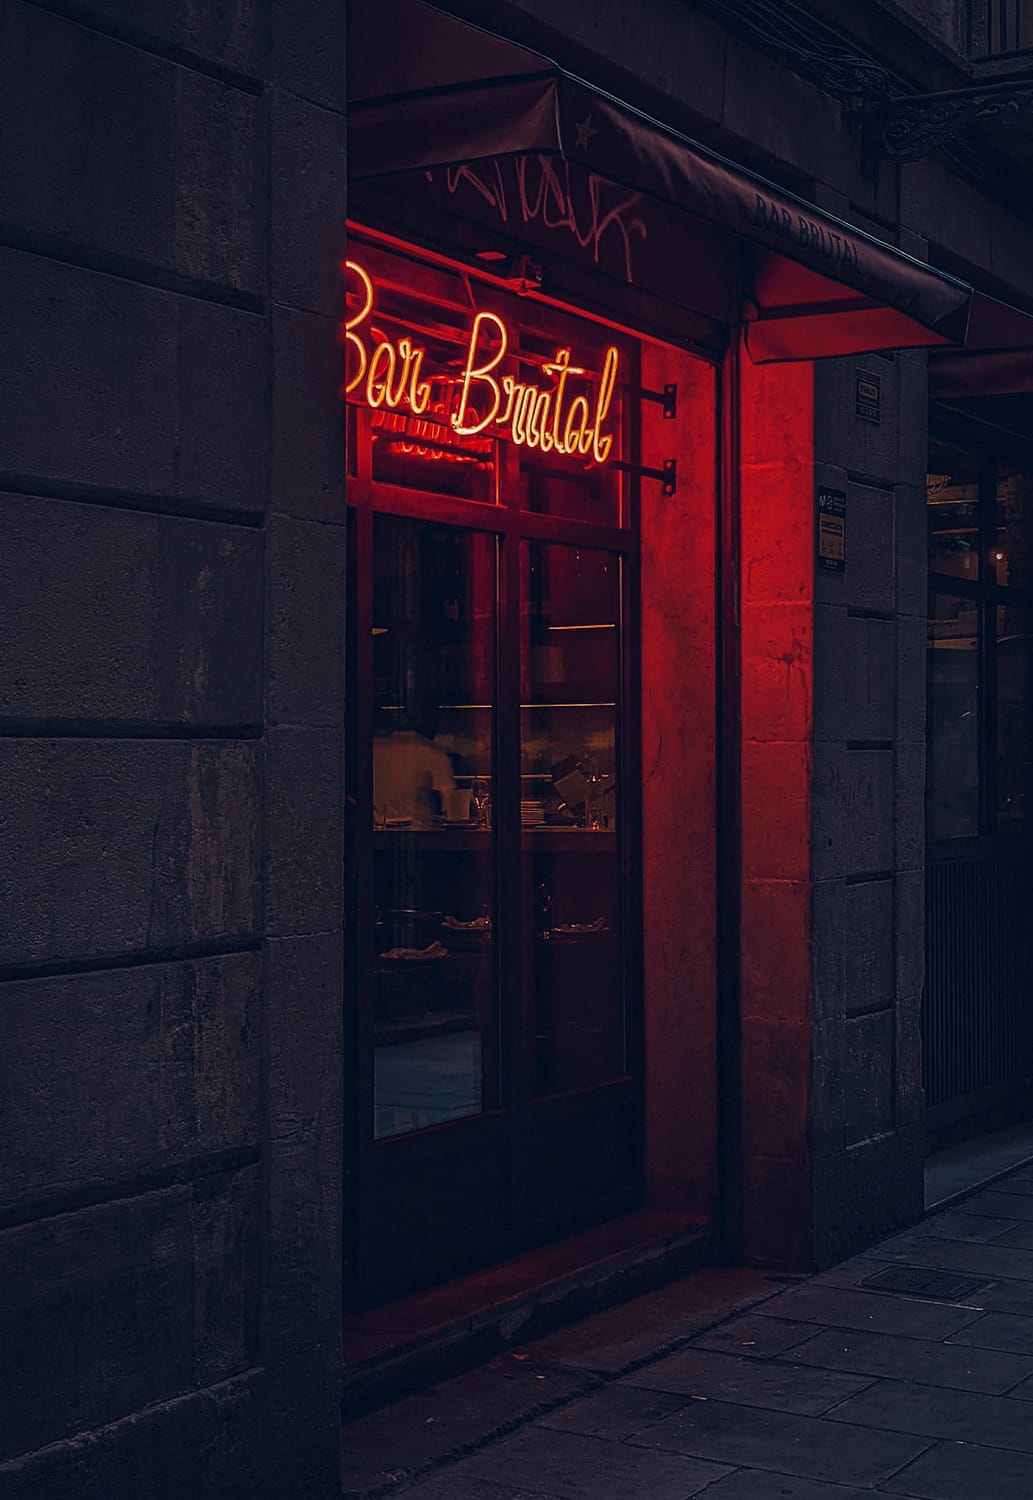 Bar Brutal, Barcelona